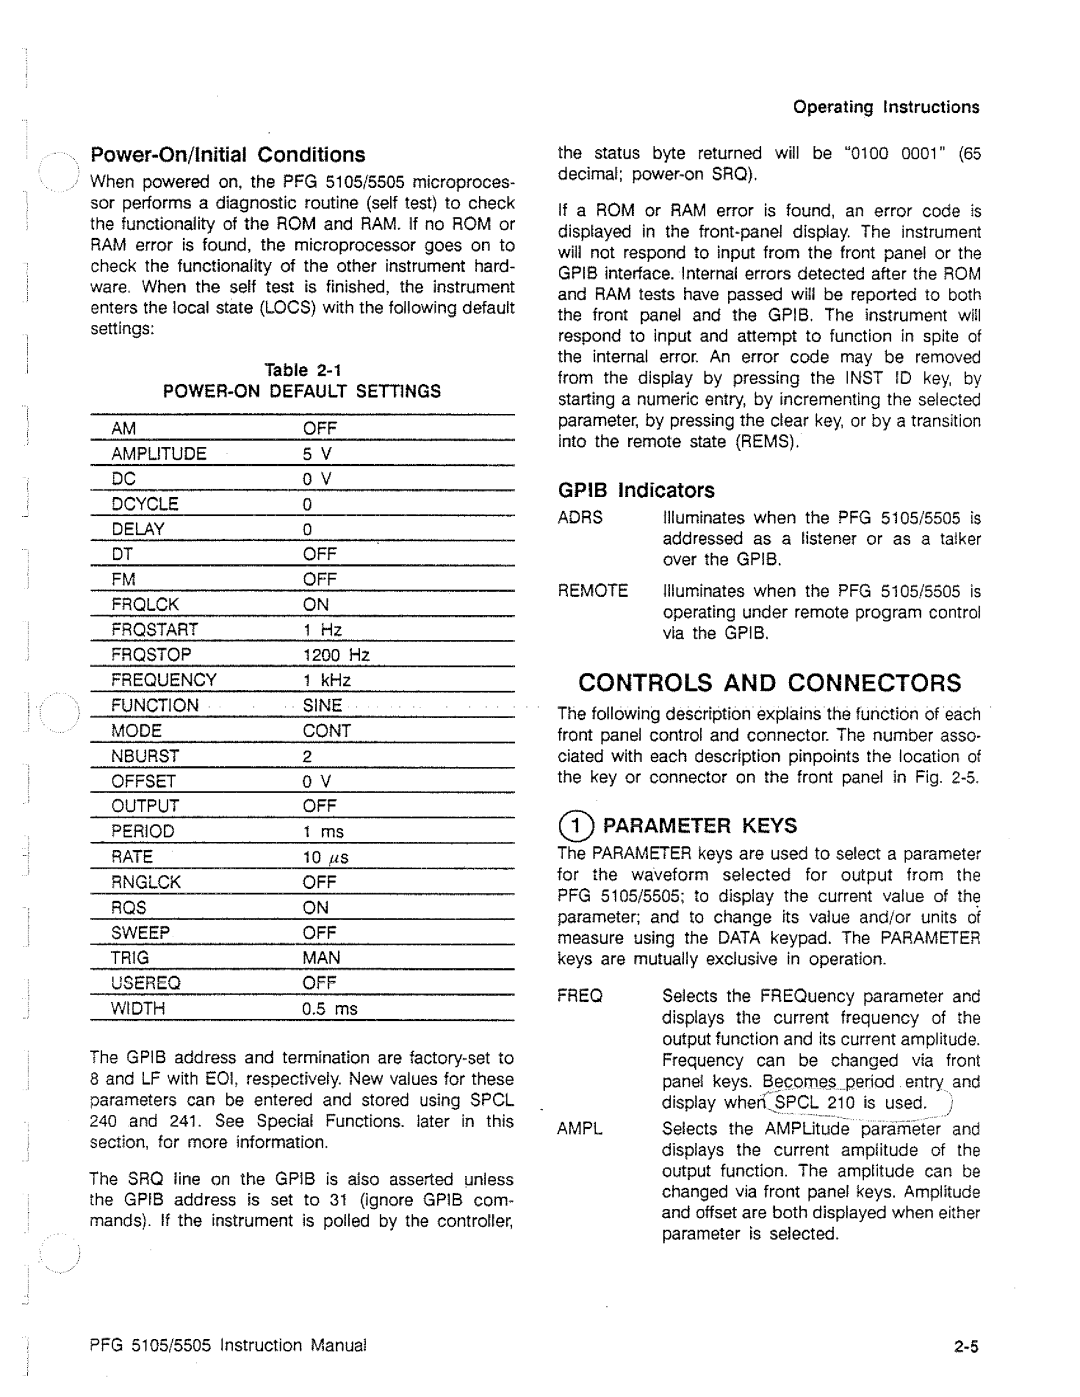 Tektronix PFG 5105, PFG 5505 manual 